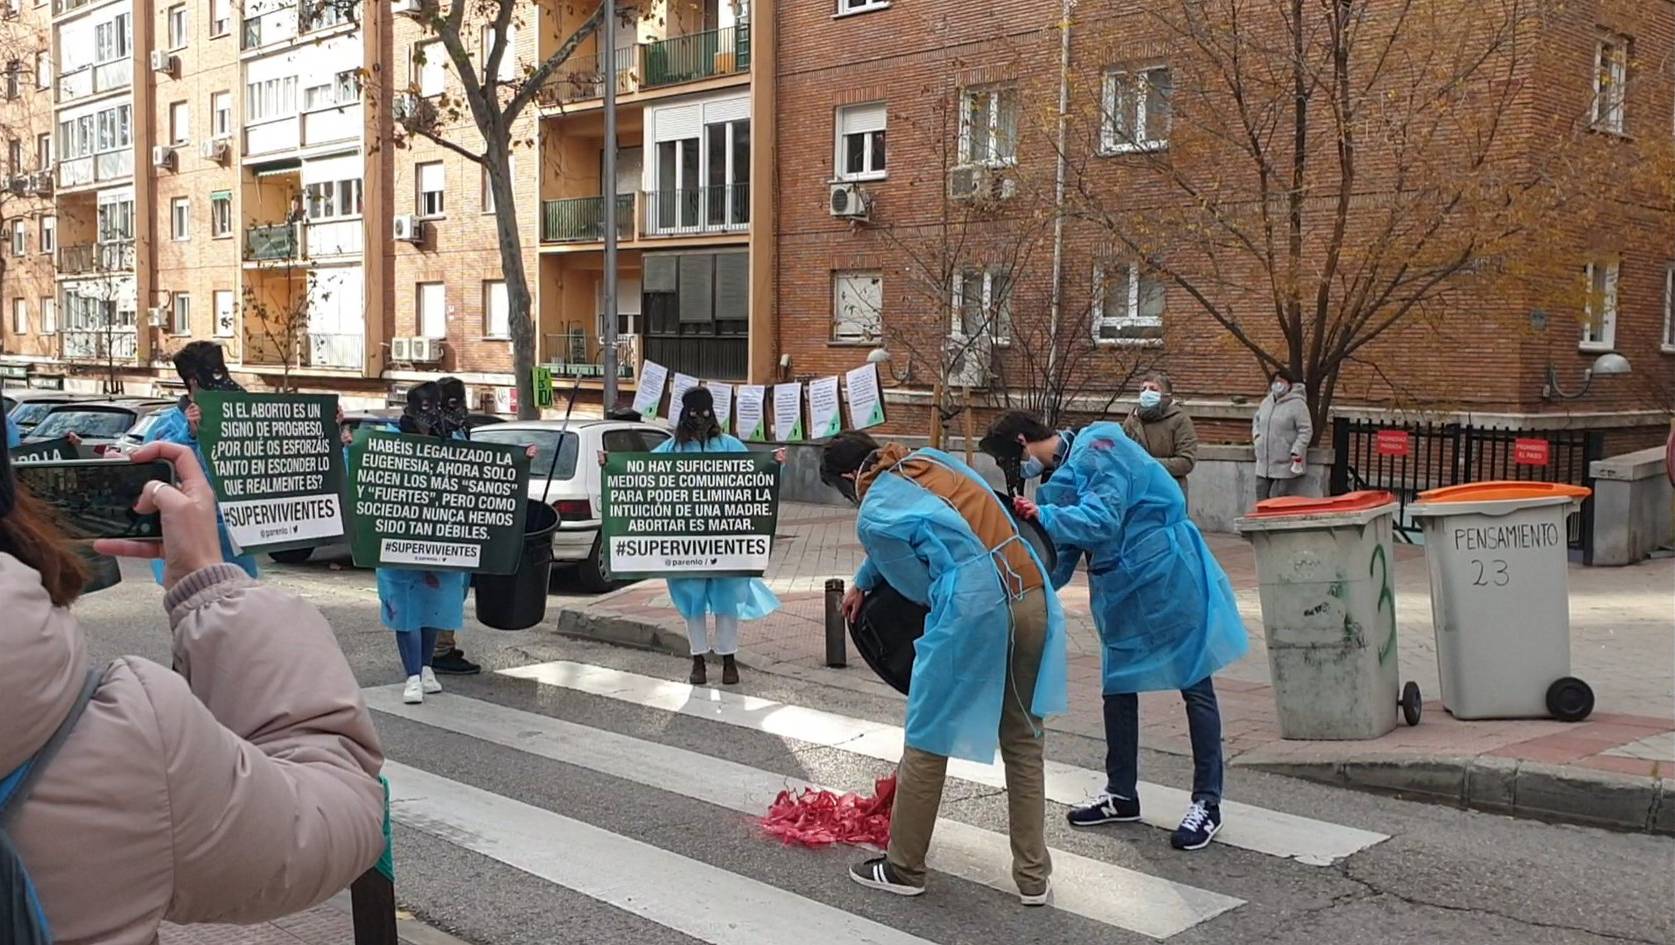 Un grupo de personas con pancartas antiaborto ante la Clínica Dator, en Madrid, que realiza esta intervención, en imagen publicada por la Asamblea Feminista de Tetuán en redes sociales.